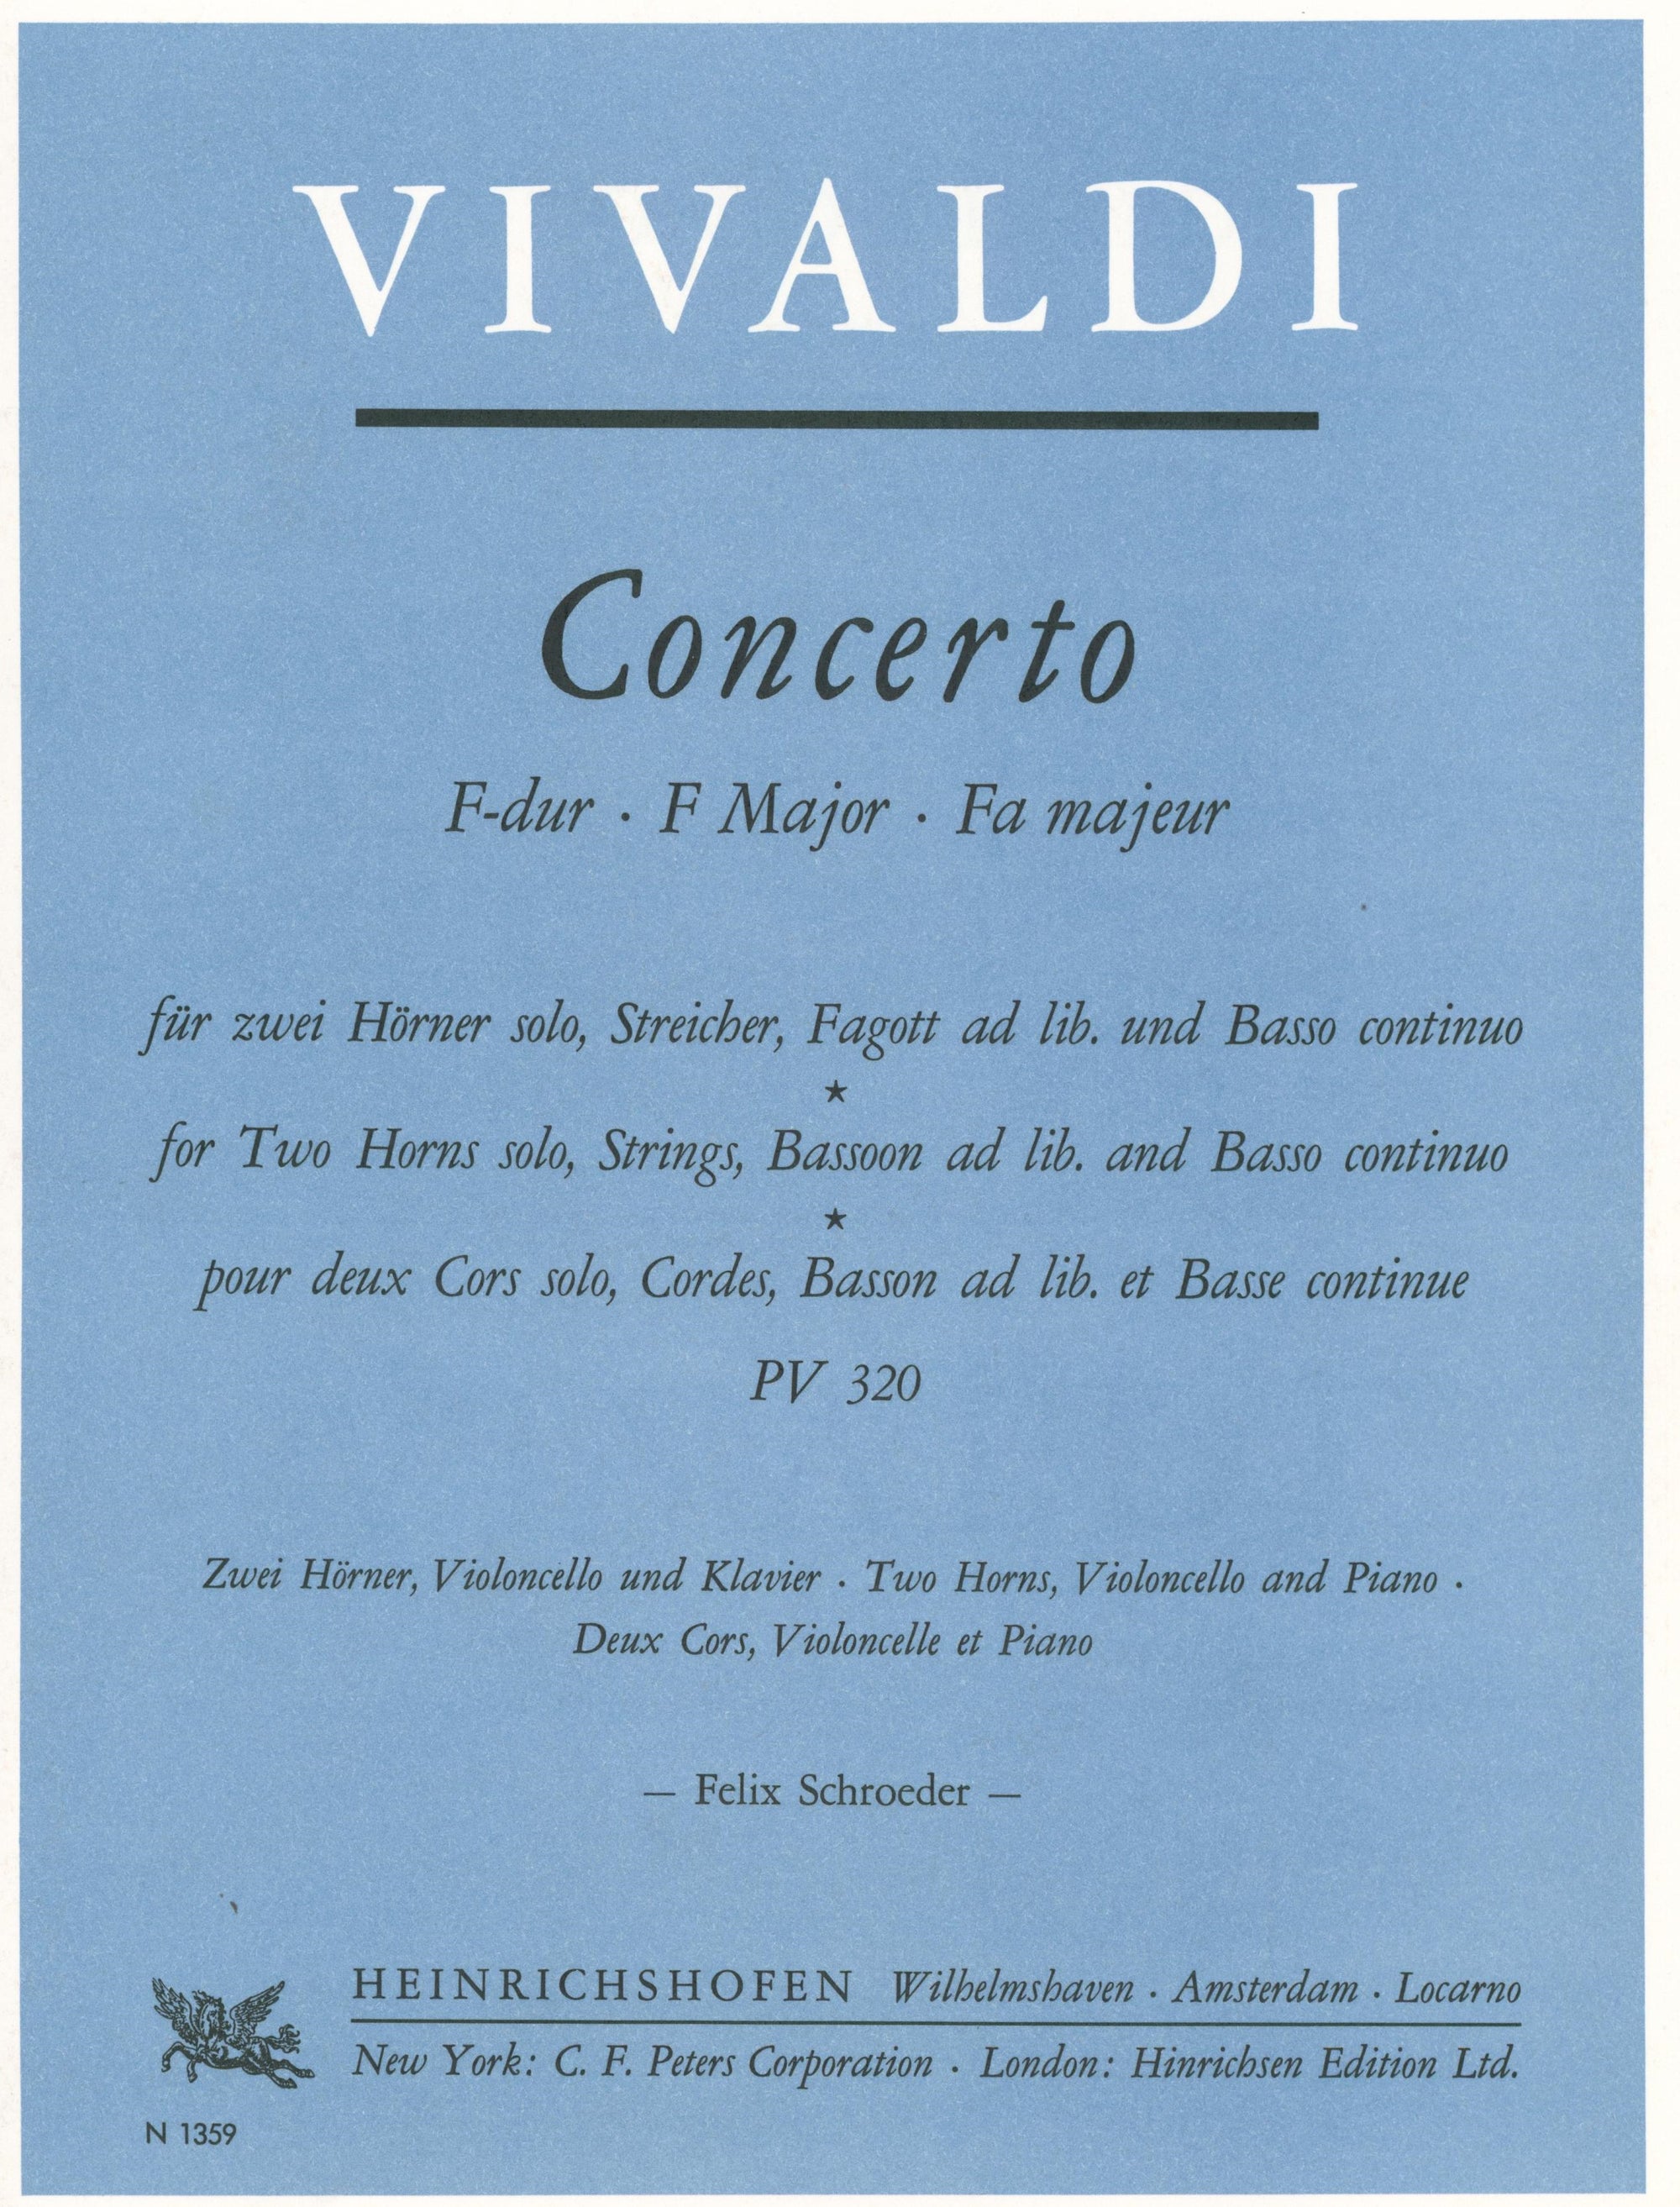 Vivaldi: Concerto for 2 Horns in F Major, RV 538